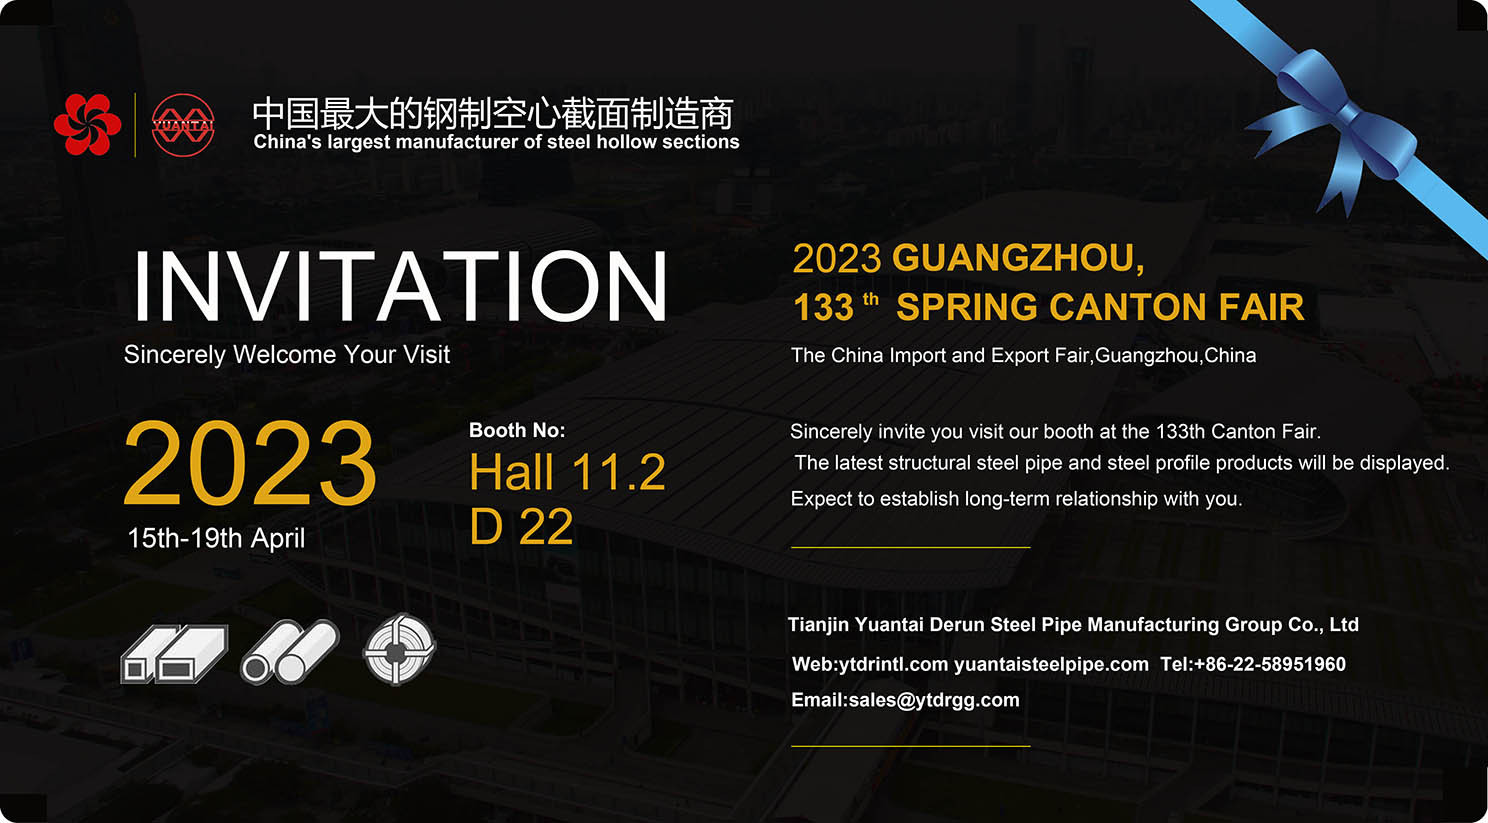 ¡Grandes noticias! Carta de invitación de la Feria de cantón - del mayor fabricante de secciones huecas de acero de china, yuantai derun Steel Pipe Group